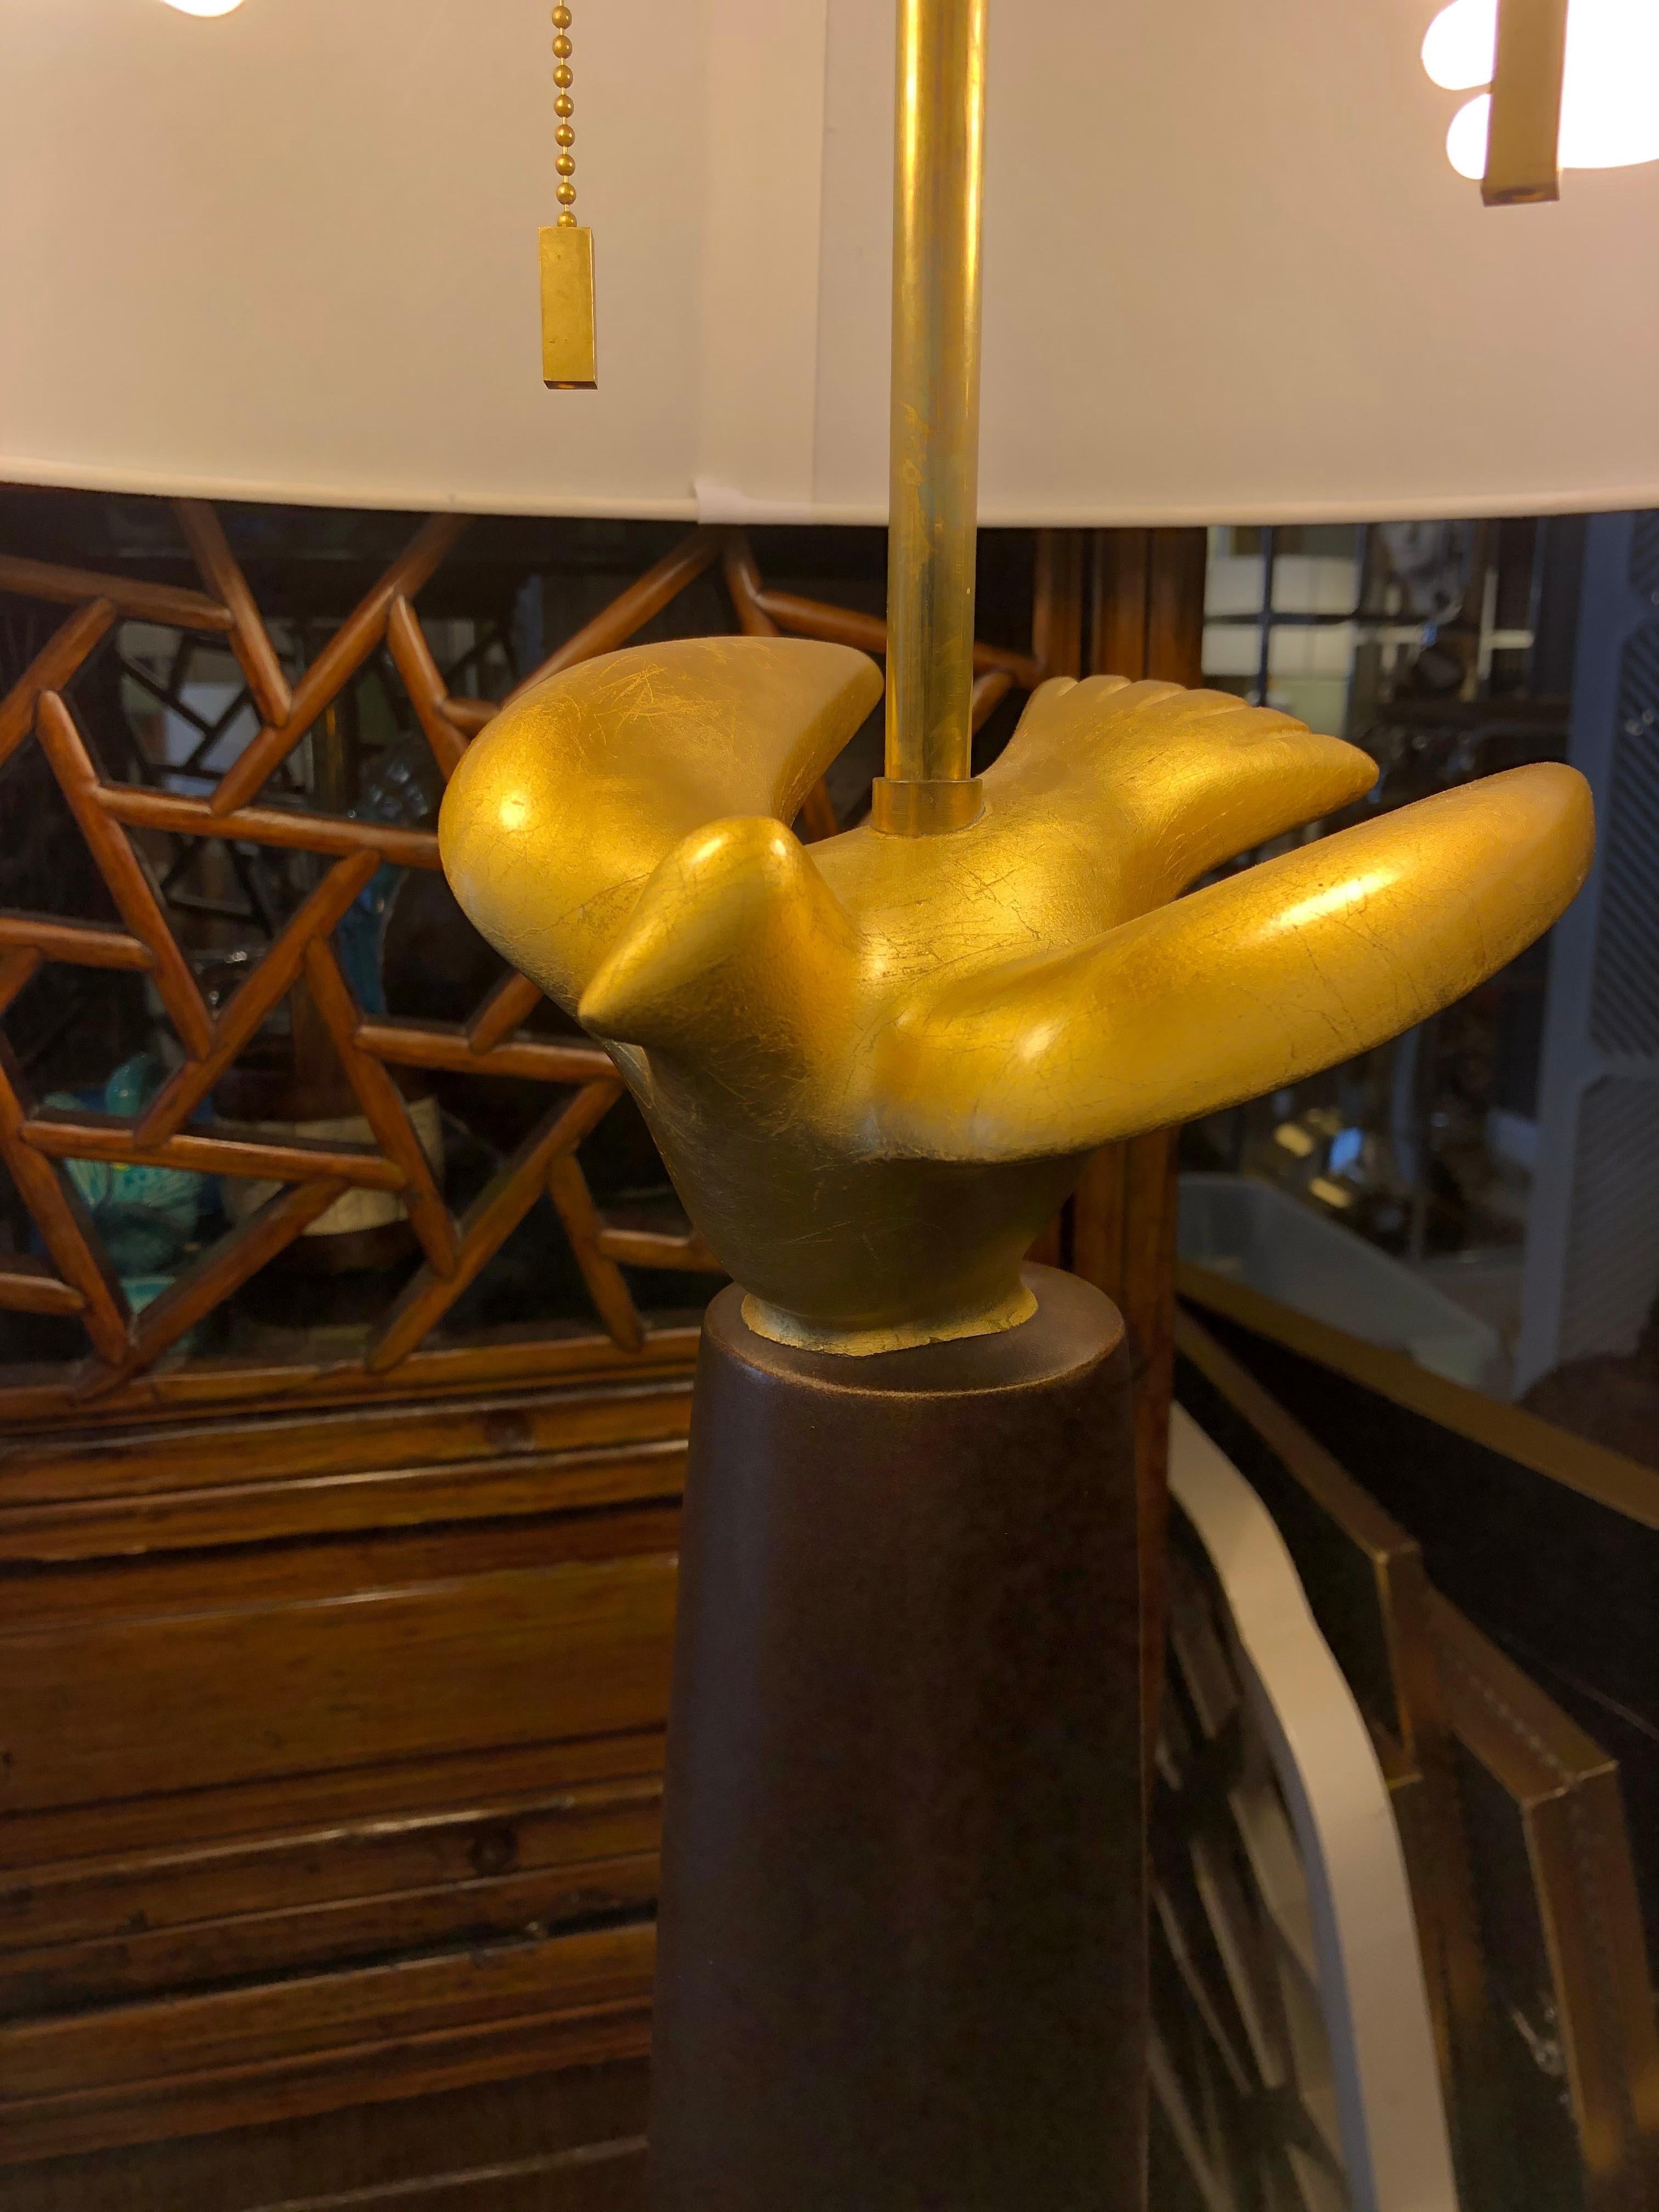 Lampe de table à colonne Sirmos de la fin du 20e siècle, avec une colombe figurative dorée.